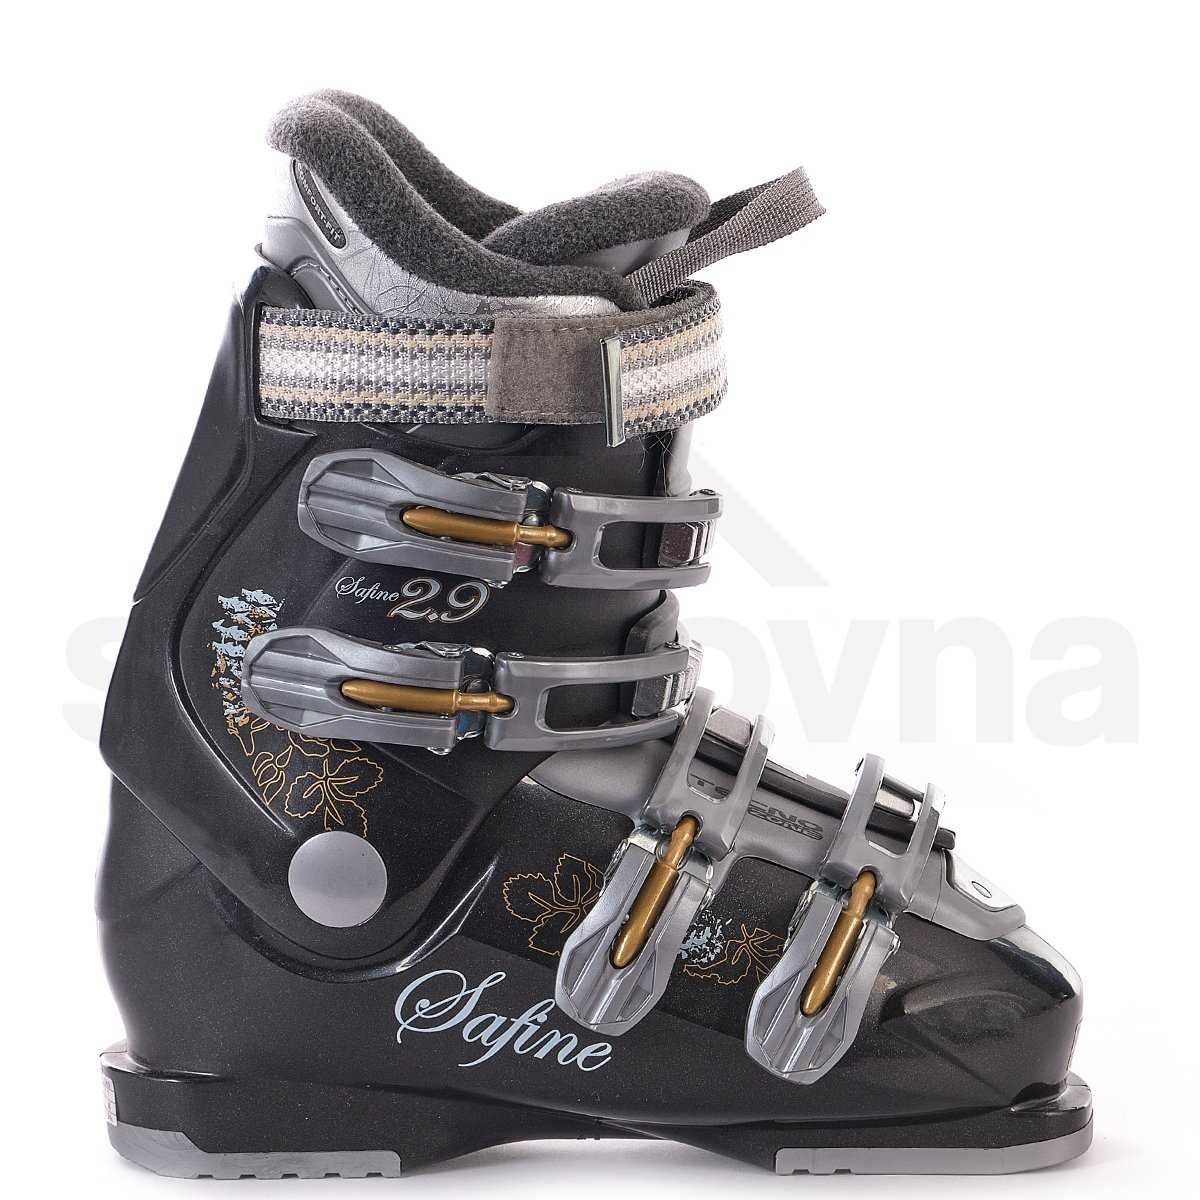 lekkie buty narciarskie TecnoPro Safine 2.9 rozmiar 41 (27)